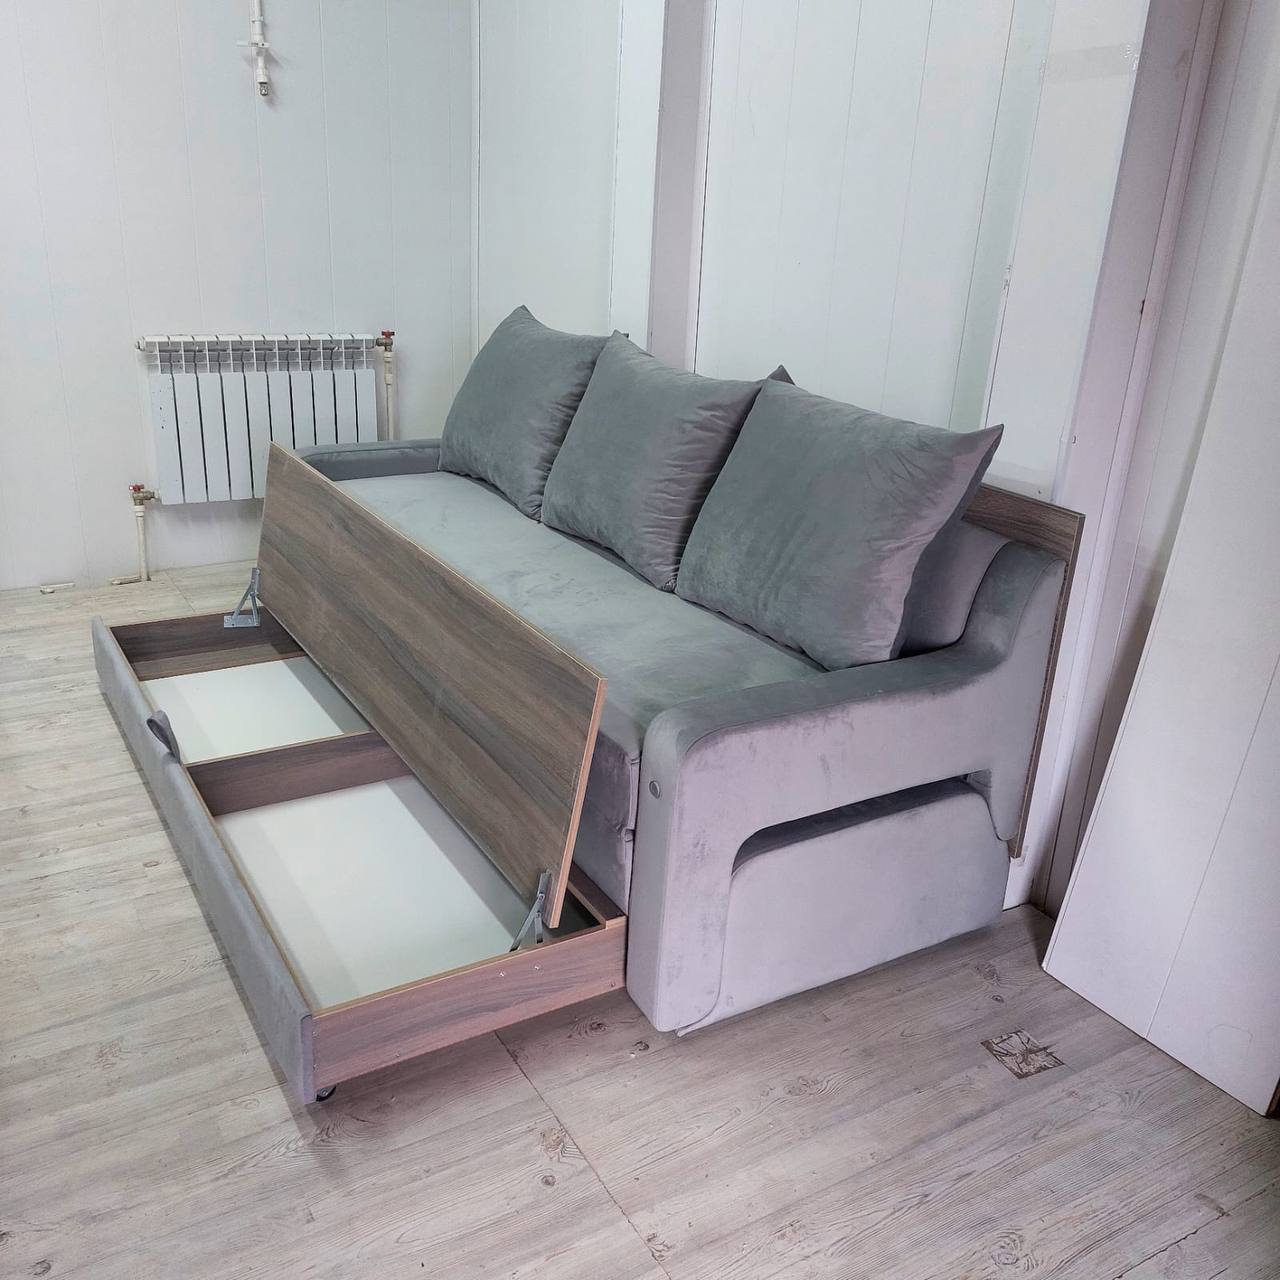 Диван трансформер 3в1 - стол, диван, кровать. Купить на официальном сайте производителя Future Furniture! Лучшая мебель, богатая гамма цветов диванов и оттенков! Индивидуальные проекты!